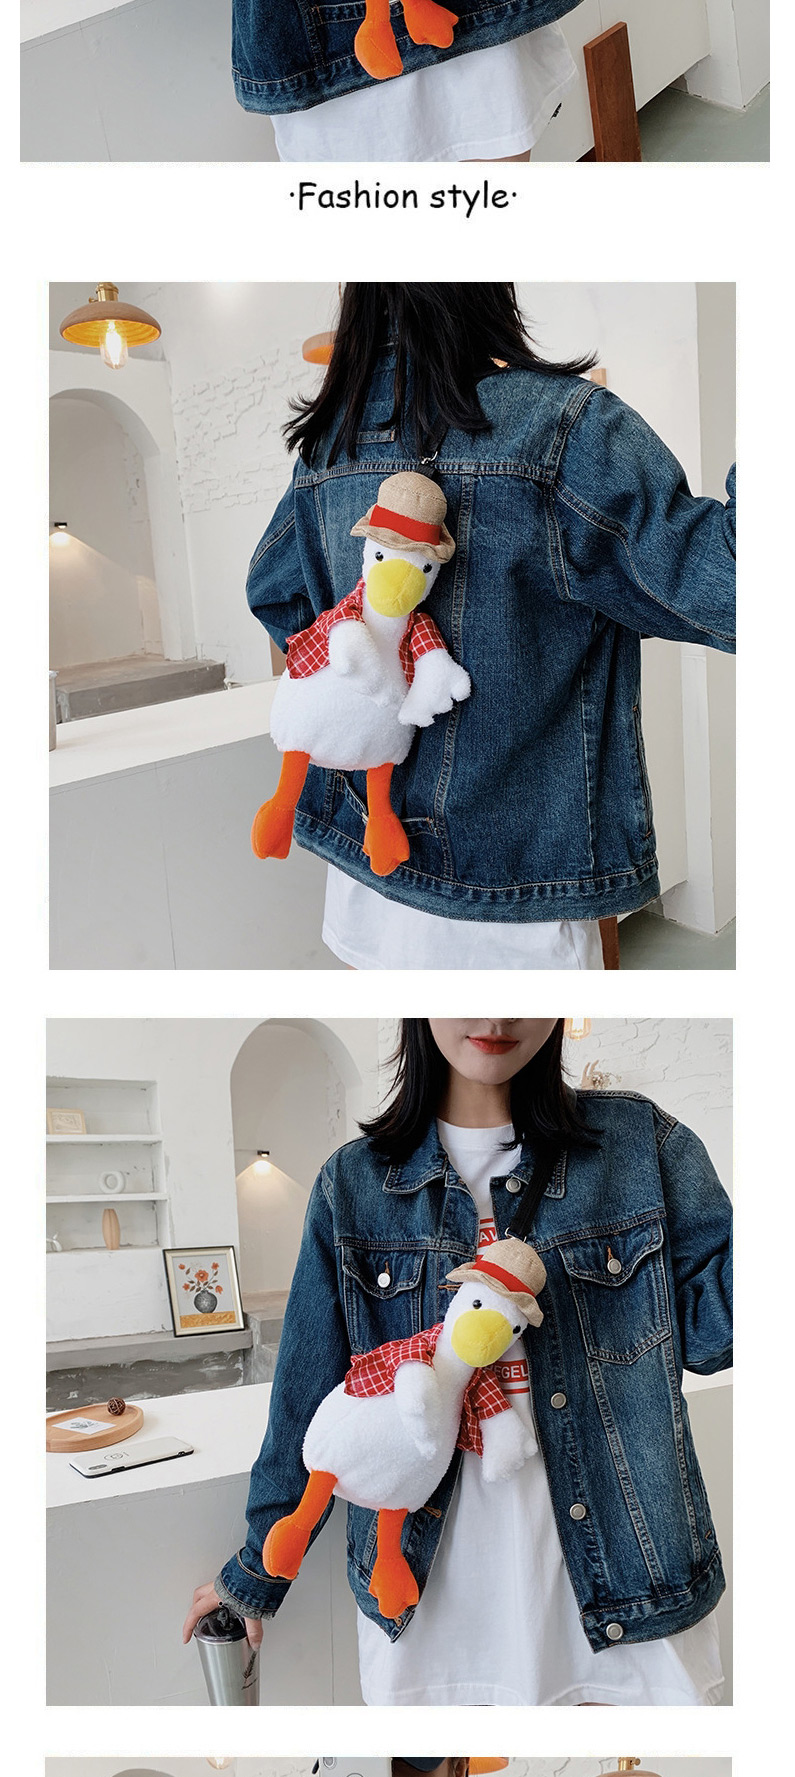 Fashion Red Ugly Cute Vest Duck Plush Toy One-shoulder Messenger Bag,Shoulder bags